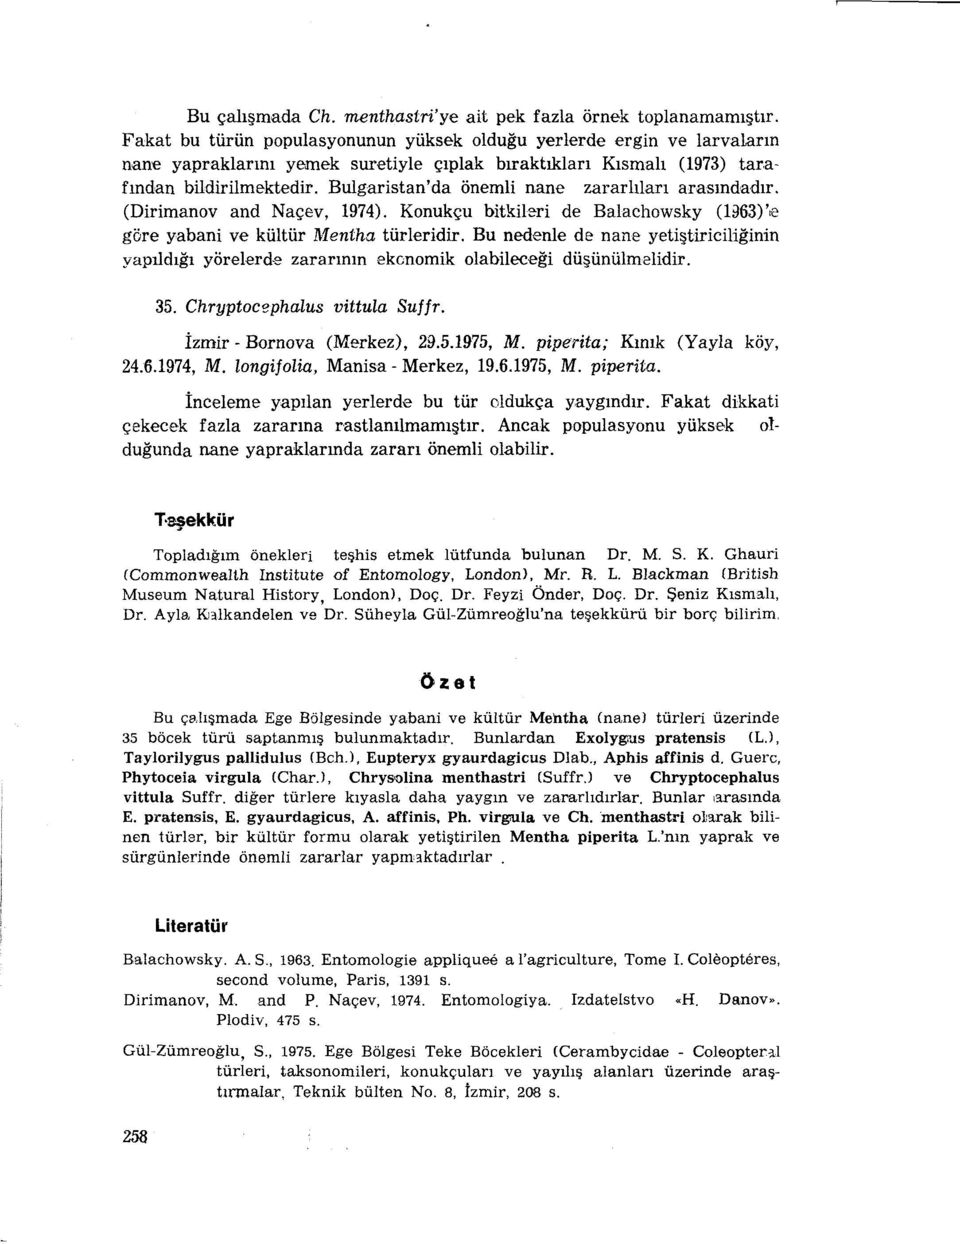 Bulgaristan'da önemli nane zararlıları arasındadır. (Dirimanov and Naçev, 1974). Konukçu bitkileri de Balachowsky (hl63)'.e göre yabani ve kültür Mentha türleridir.